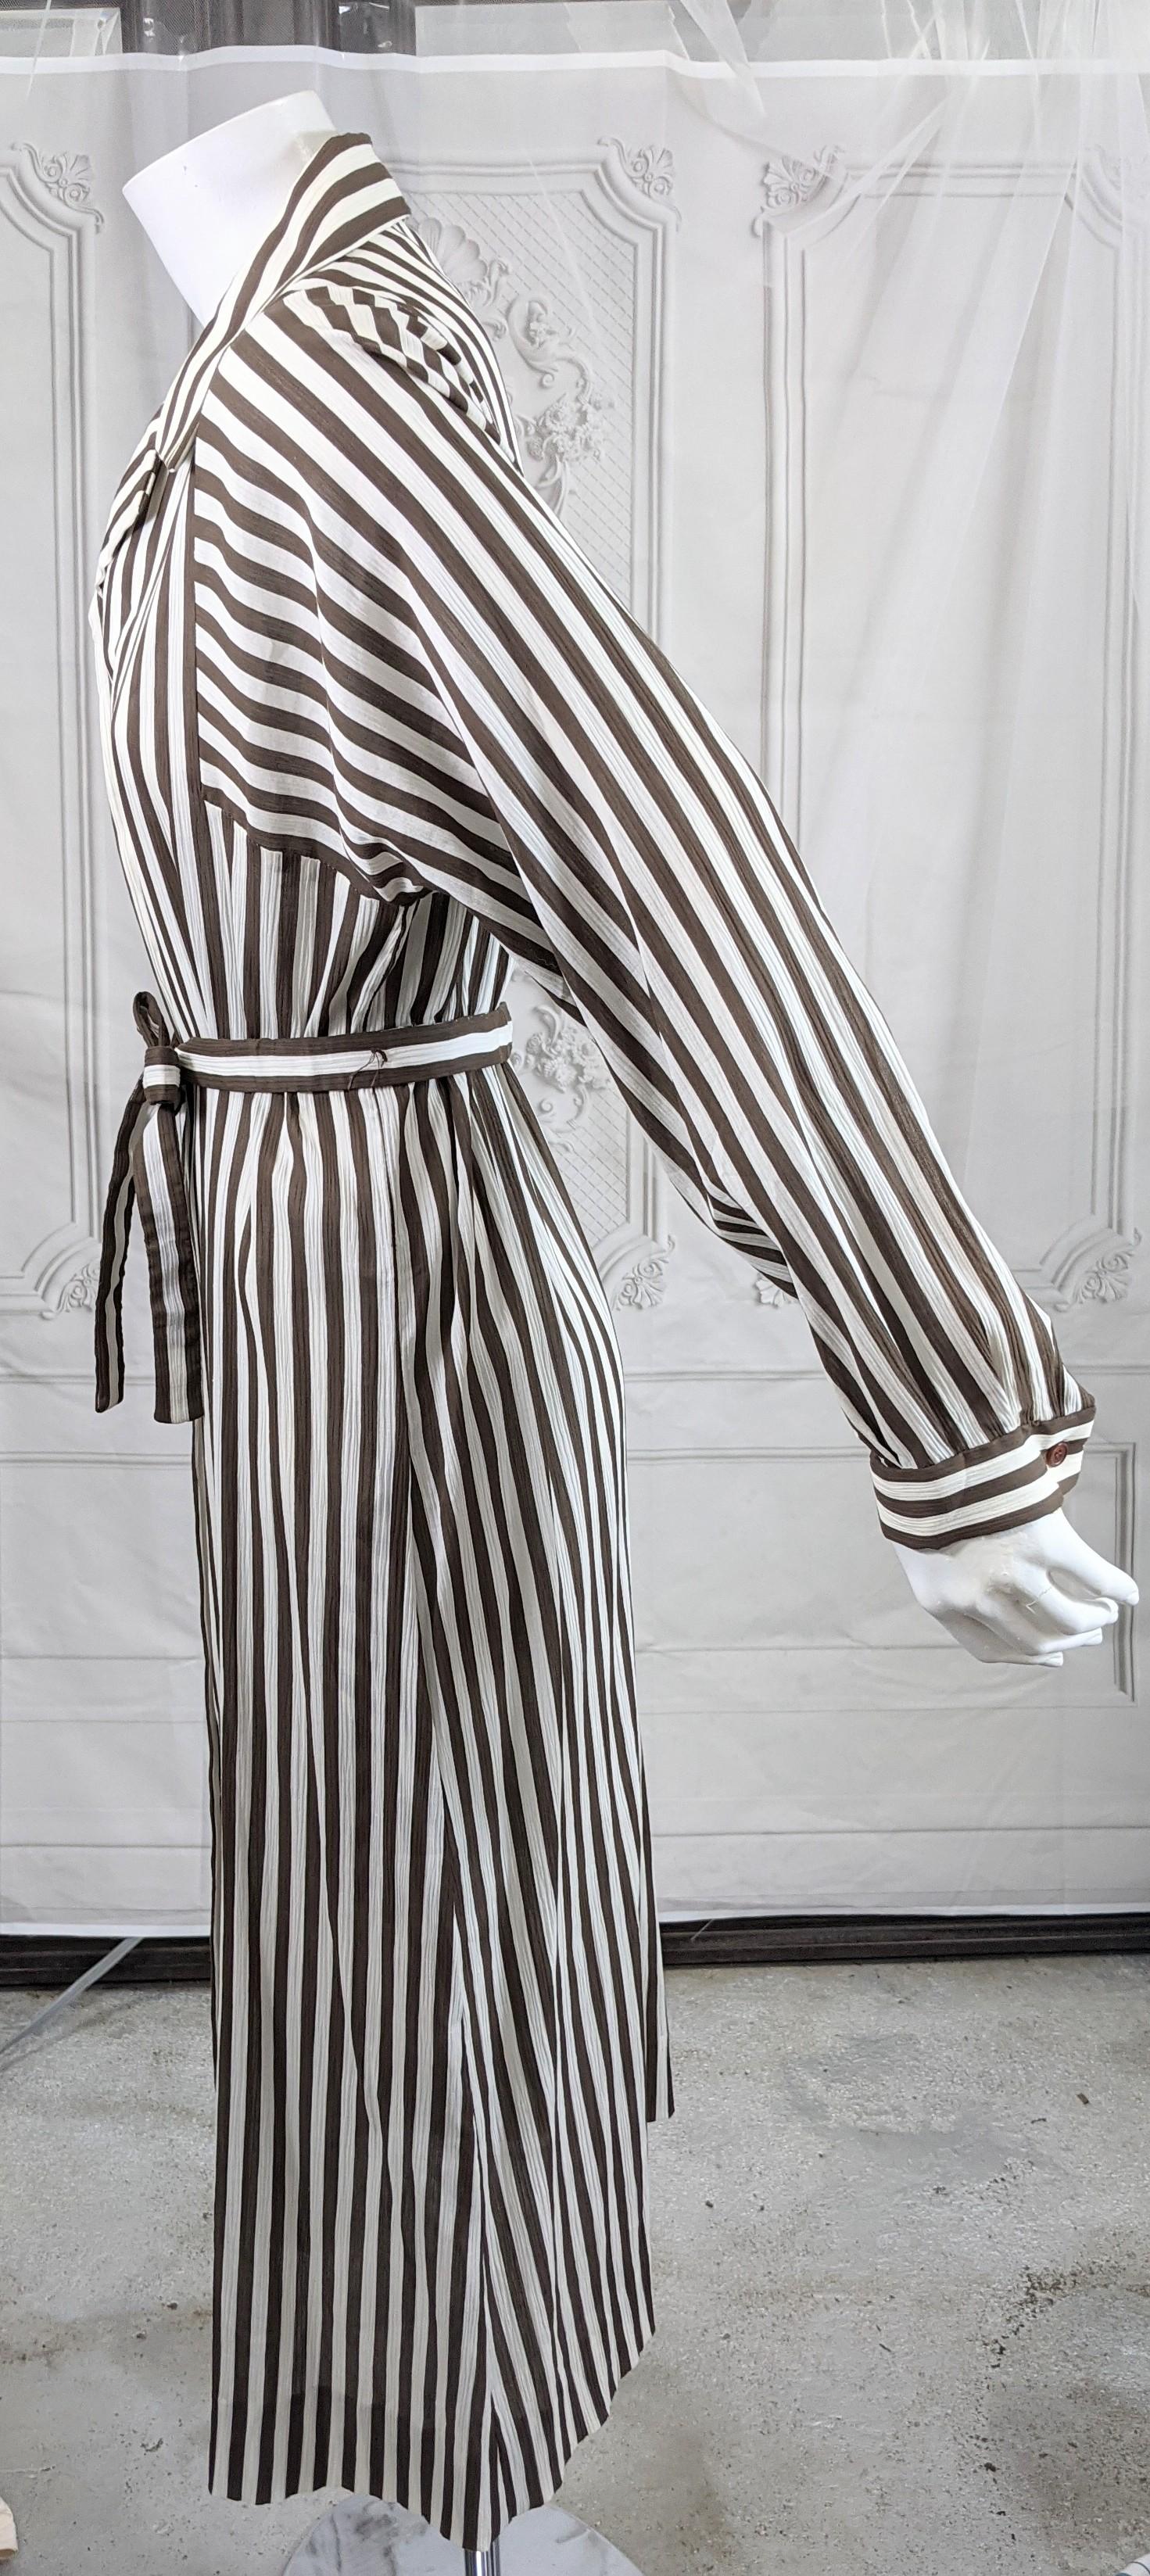 Élégante et intemporelle, la robe de jour à rayures en coton chocolat froissé Halston est de style taille chemise avec ceinture automatique. Les manches dolman profondes ont des rayures dans le sens de la longueur.
Ancien stock avec des boutons